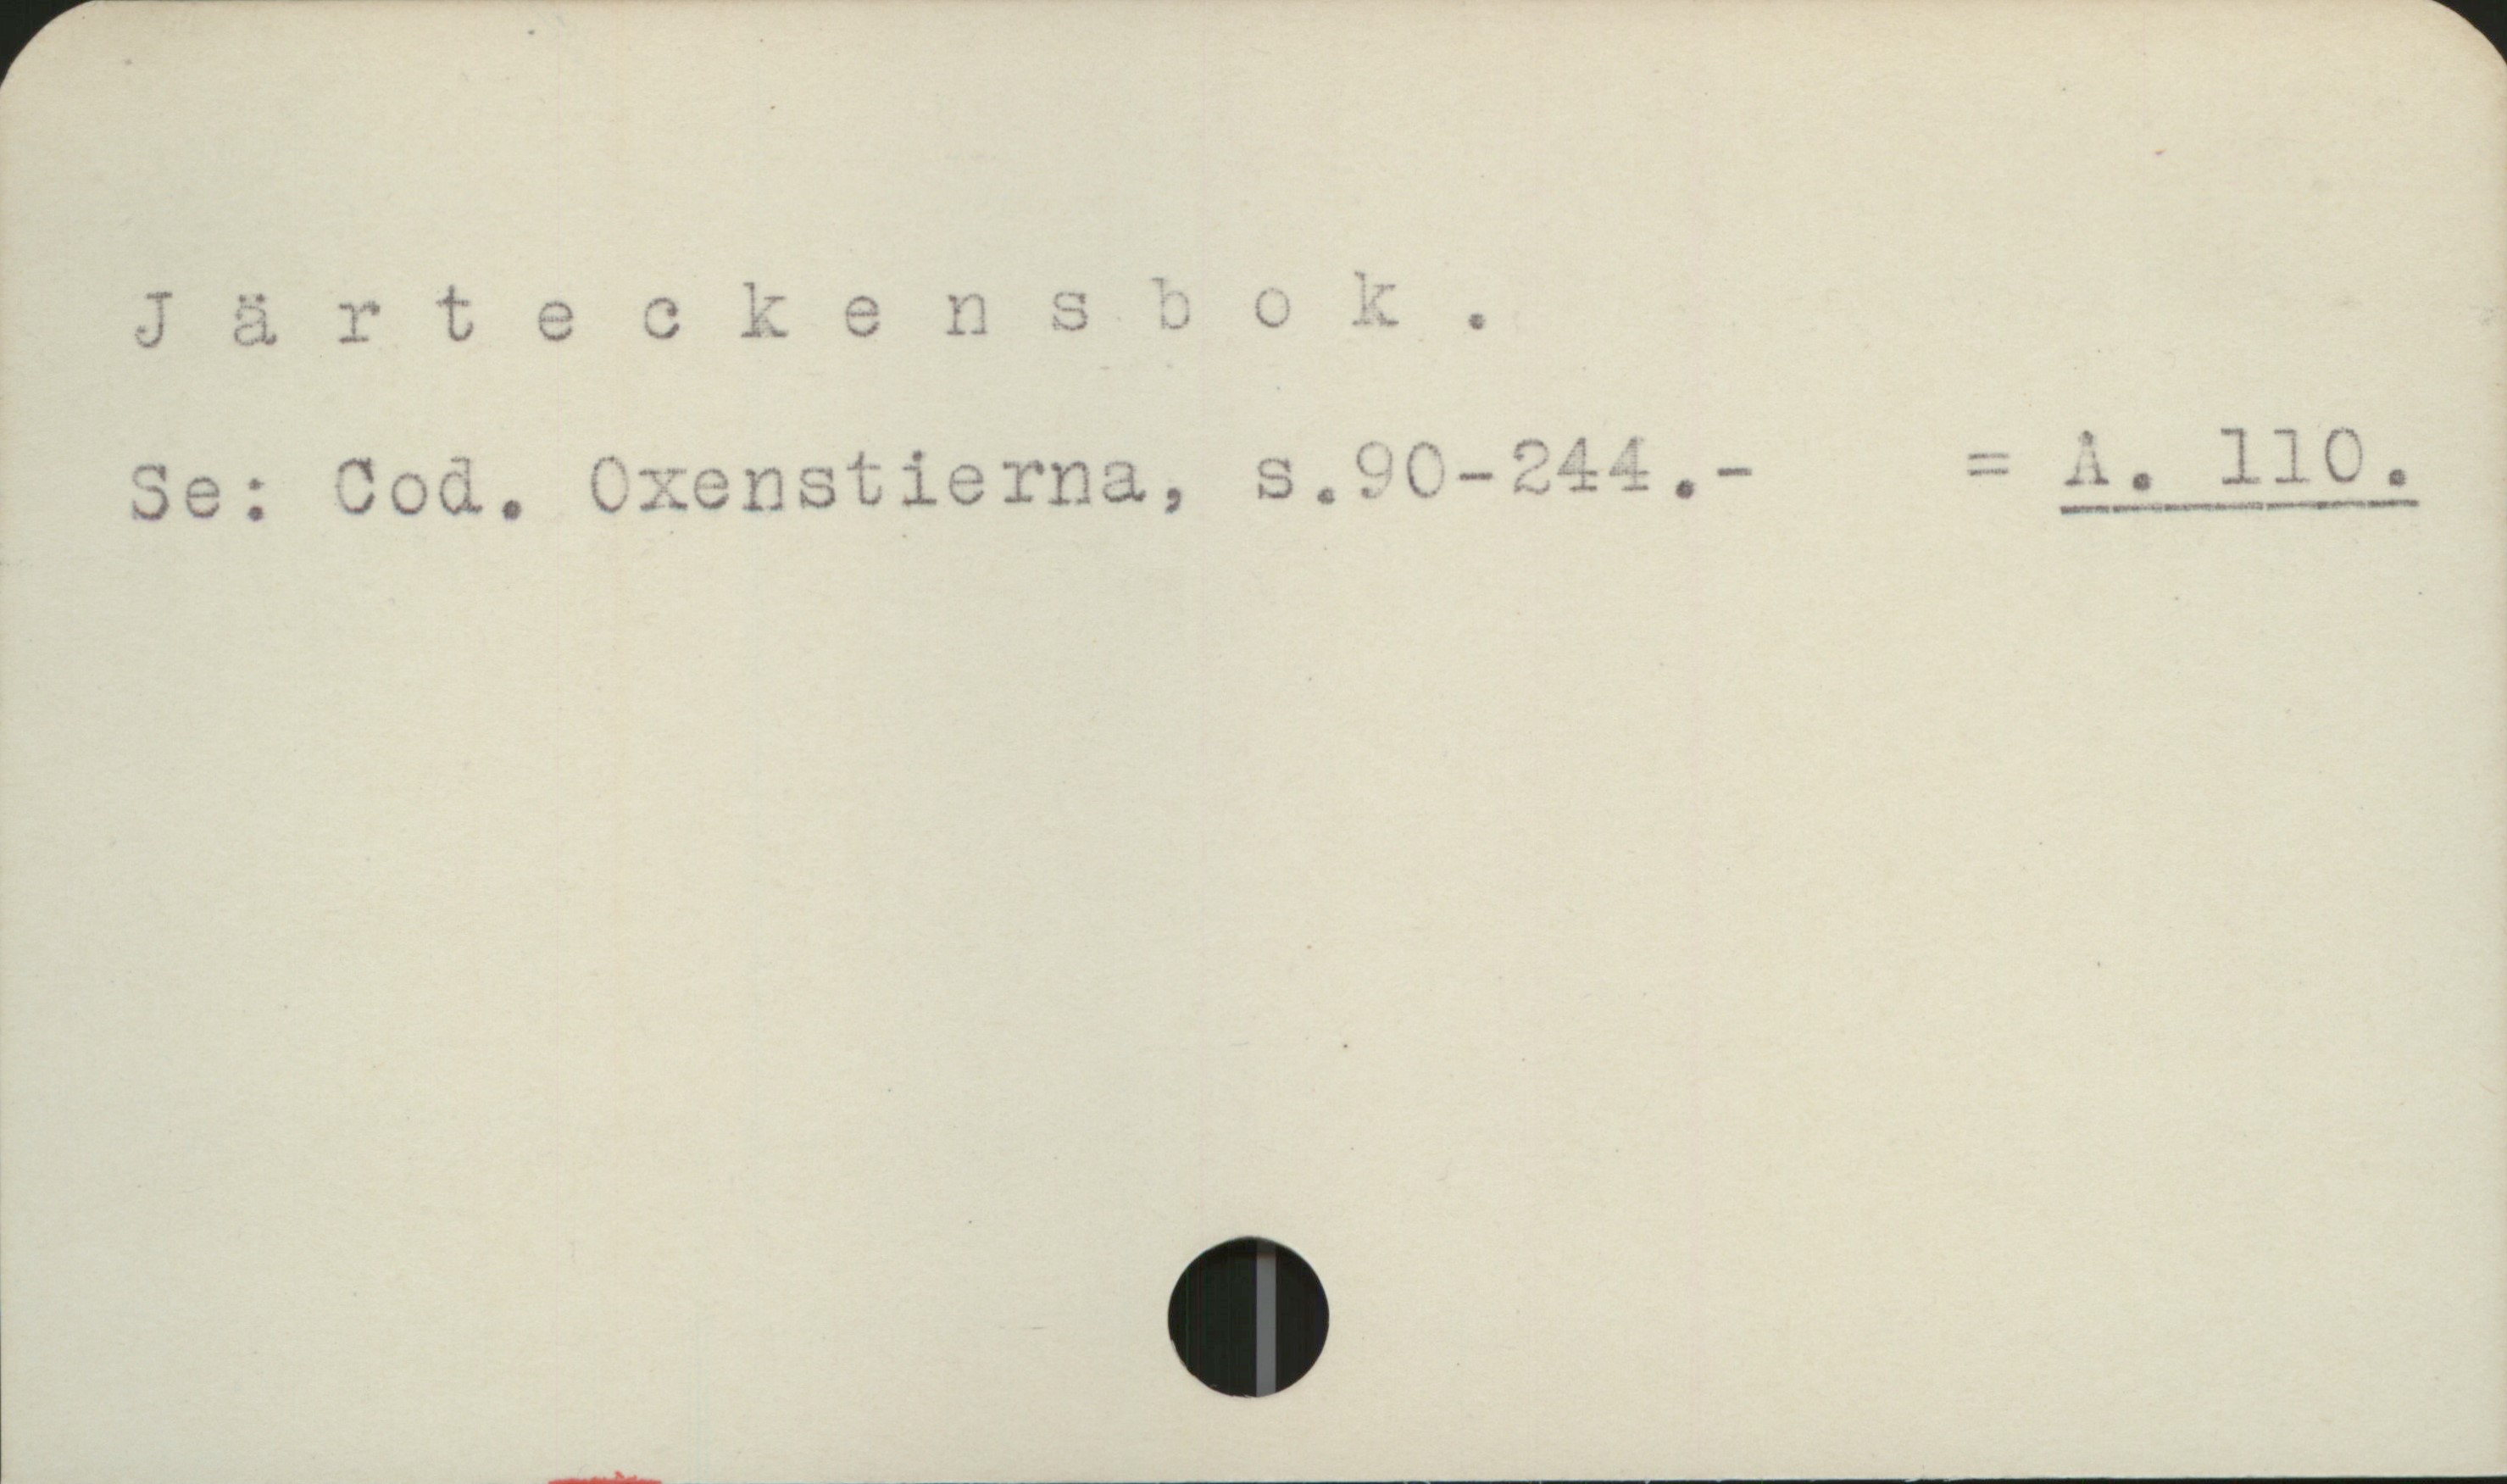 Järteckensbok Järteckensbok

Se: Cod. Oxenstierna,  s. 90-244                = A 110